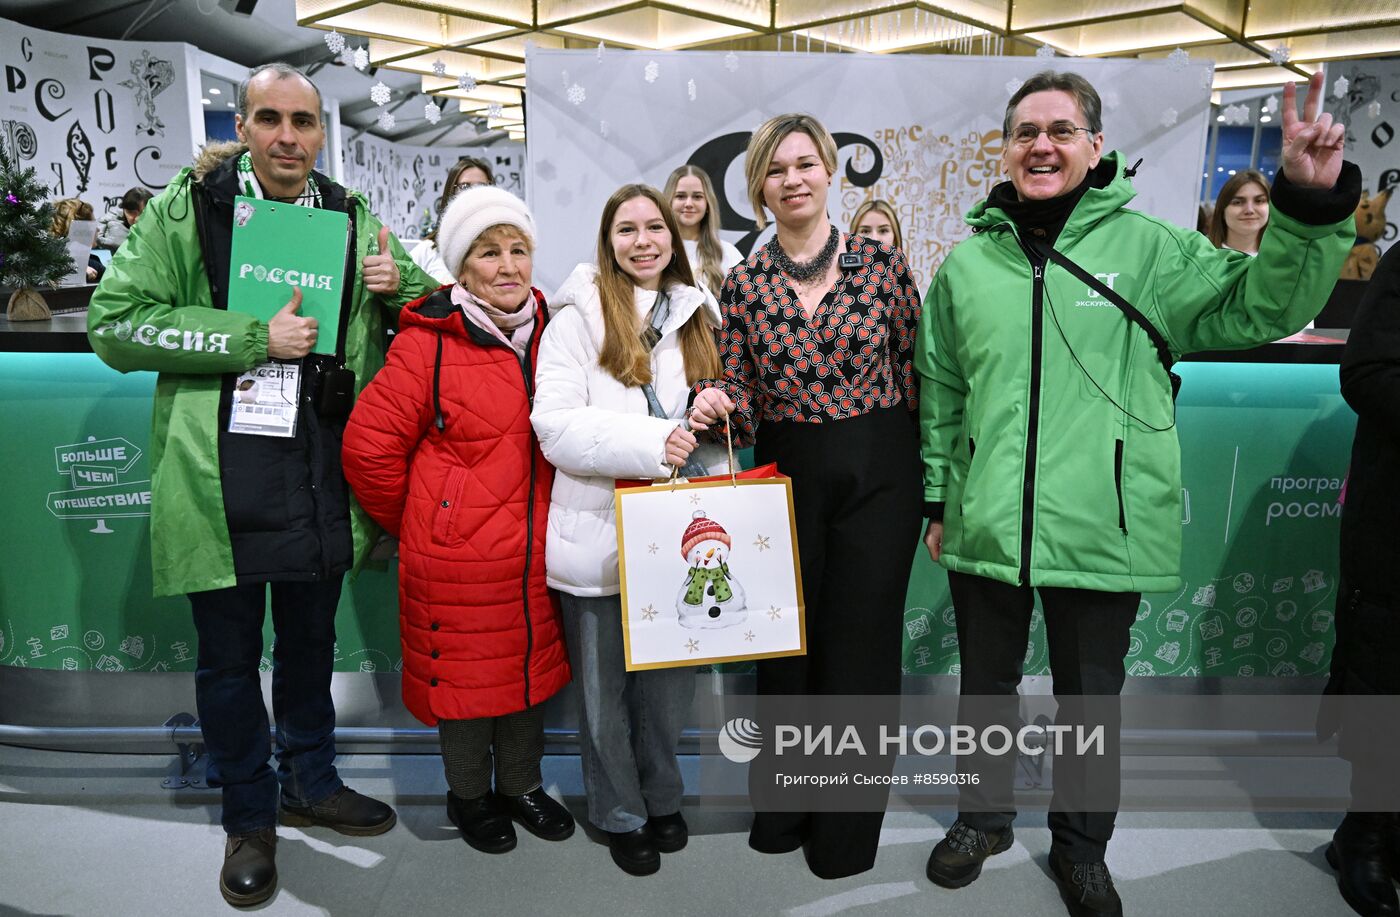 Выставка "Россия". Поздравление 100-тысячного участника экскурсий по выставке